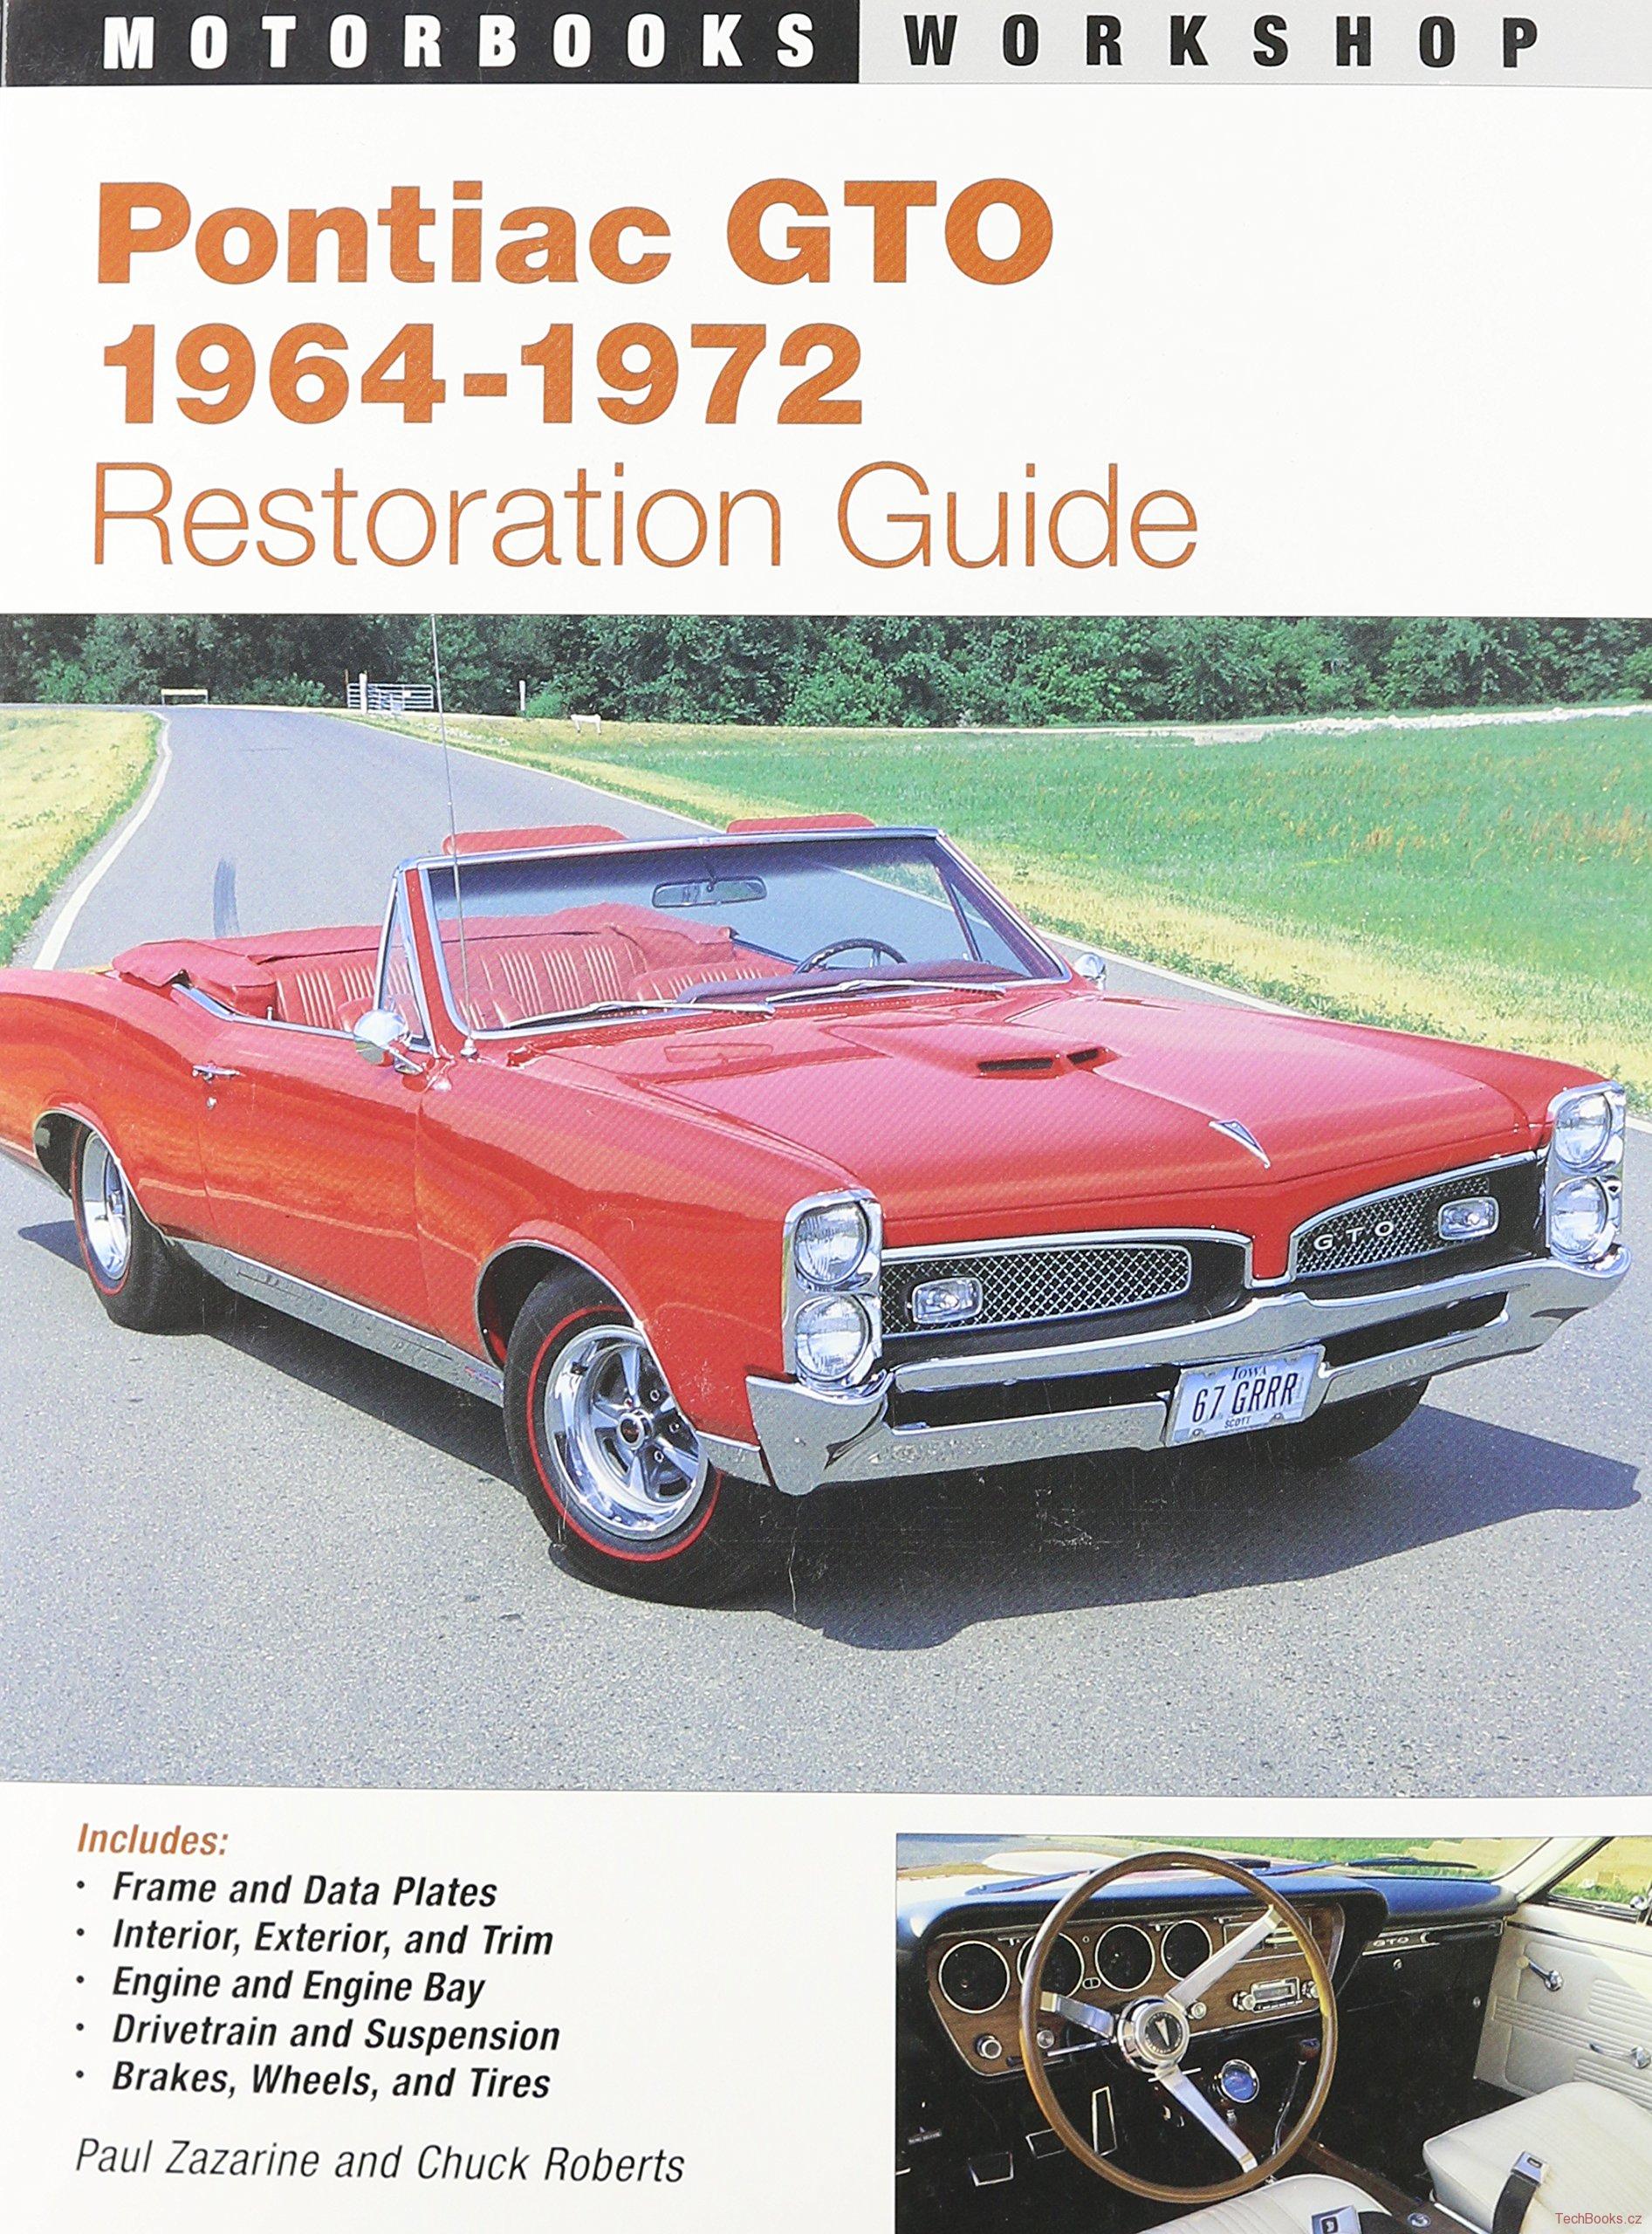 Pontiac GTO Restoration Guide 1964-1972